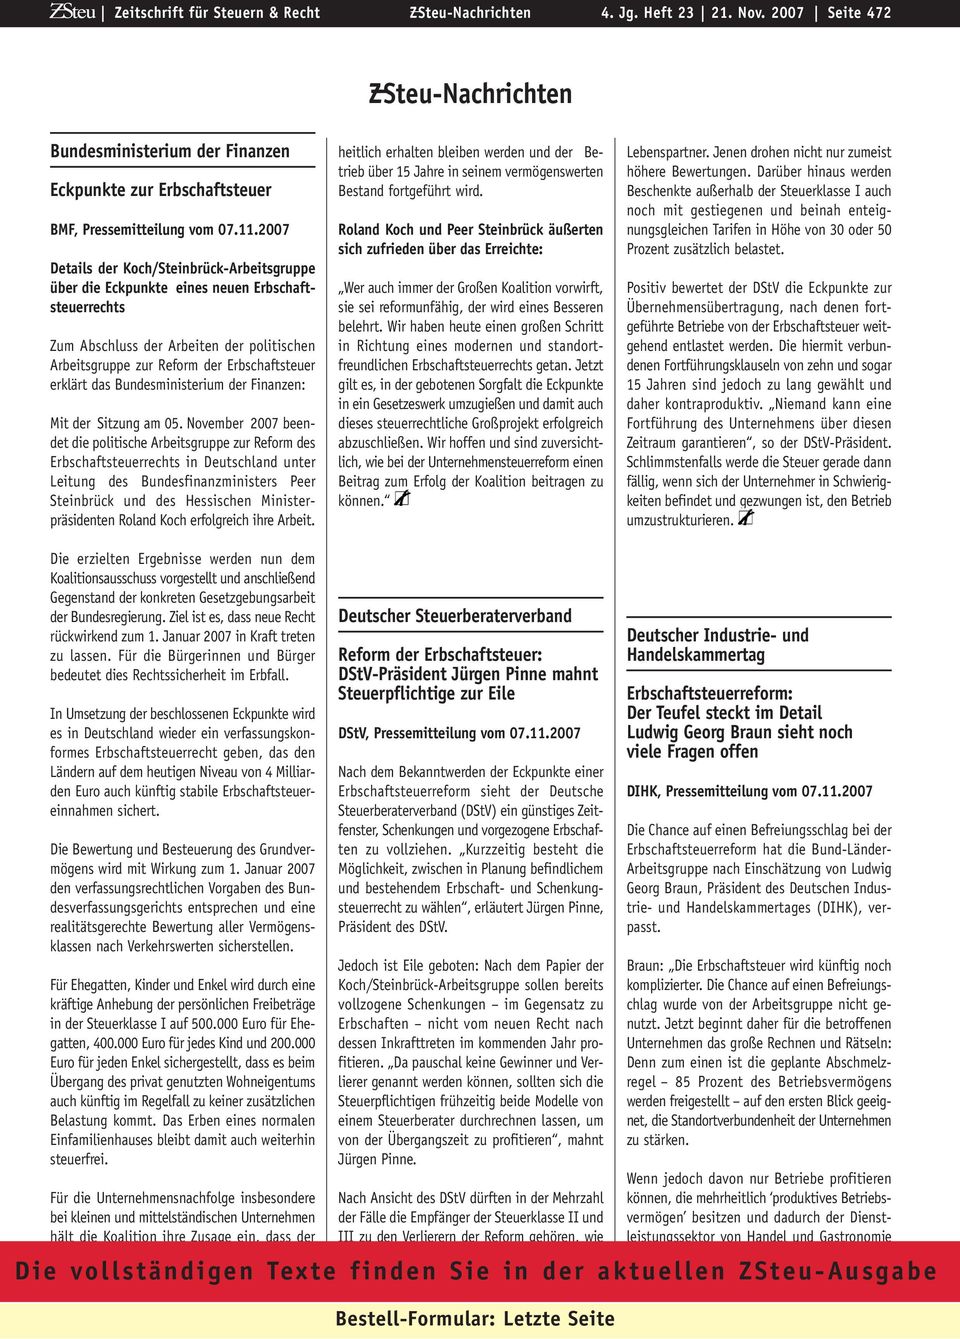 2007 Details der Koch/Steinbrück-Arbeitsgruppe über die Eckpunkte eines neuen Erbschaftsteuerrechts Zum Abschluss der Arbeiten der politischen Arbeitsgruppe zur Reform der Erbschaftsteuer erklärt das